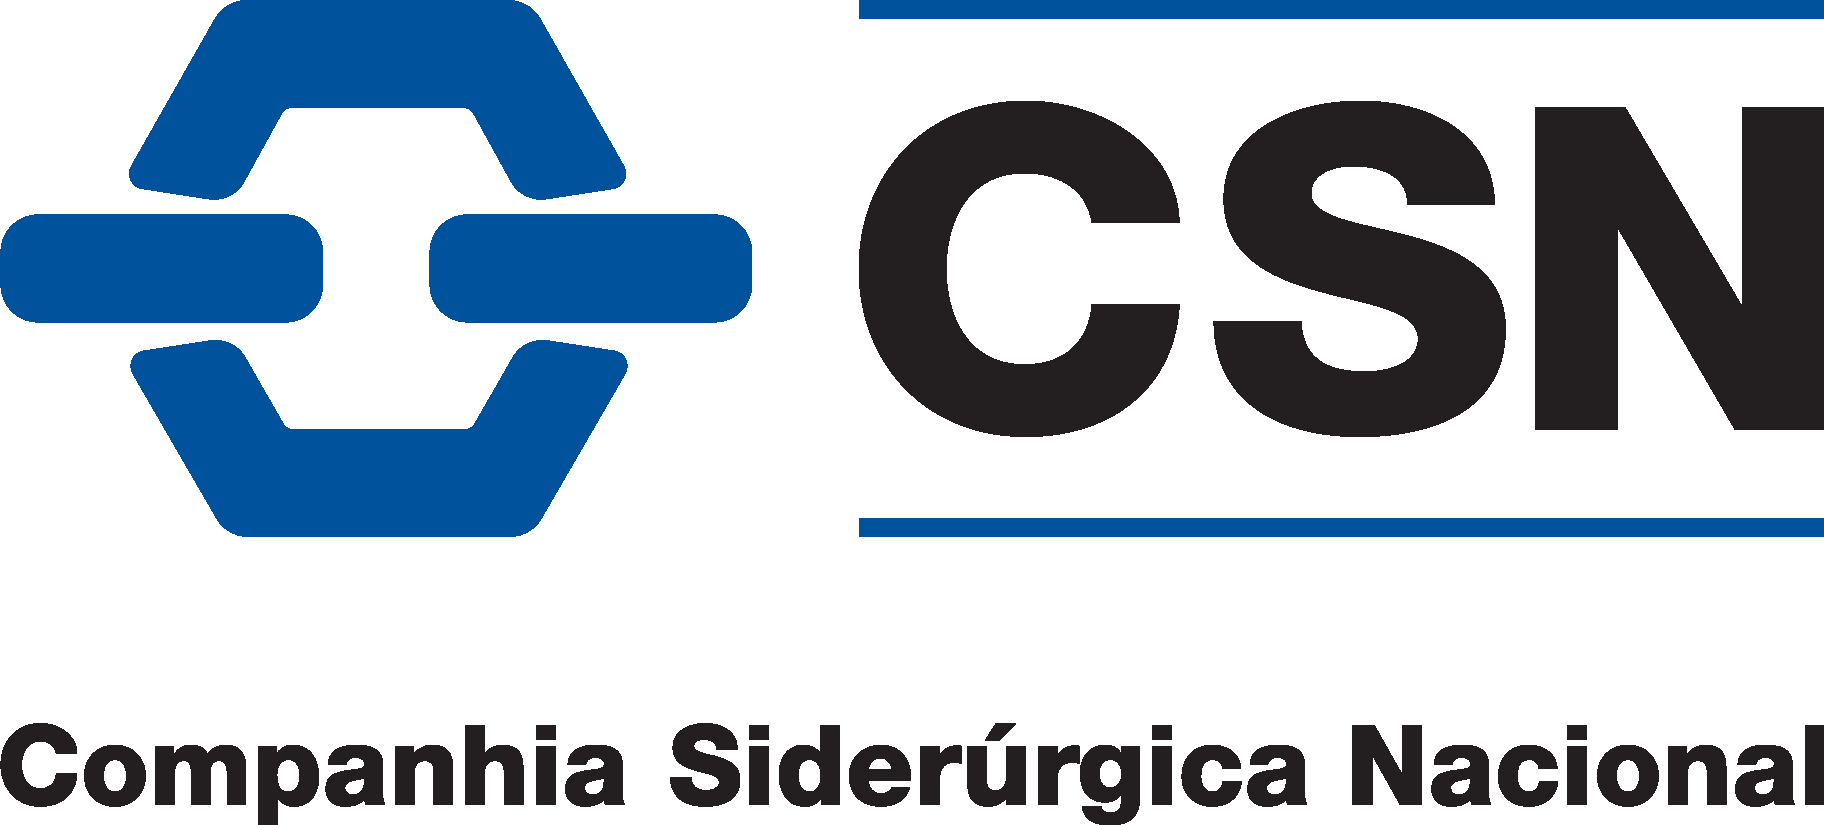 Companhia Siderurgica Nacional Logo Vector - (.Ai .PNG .SVG .EPS Free ...